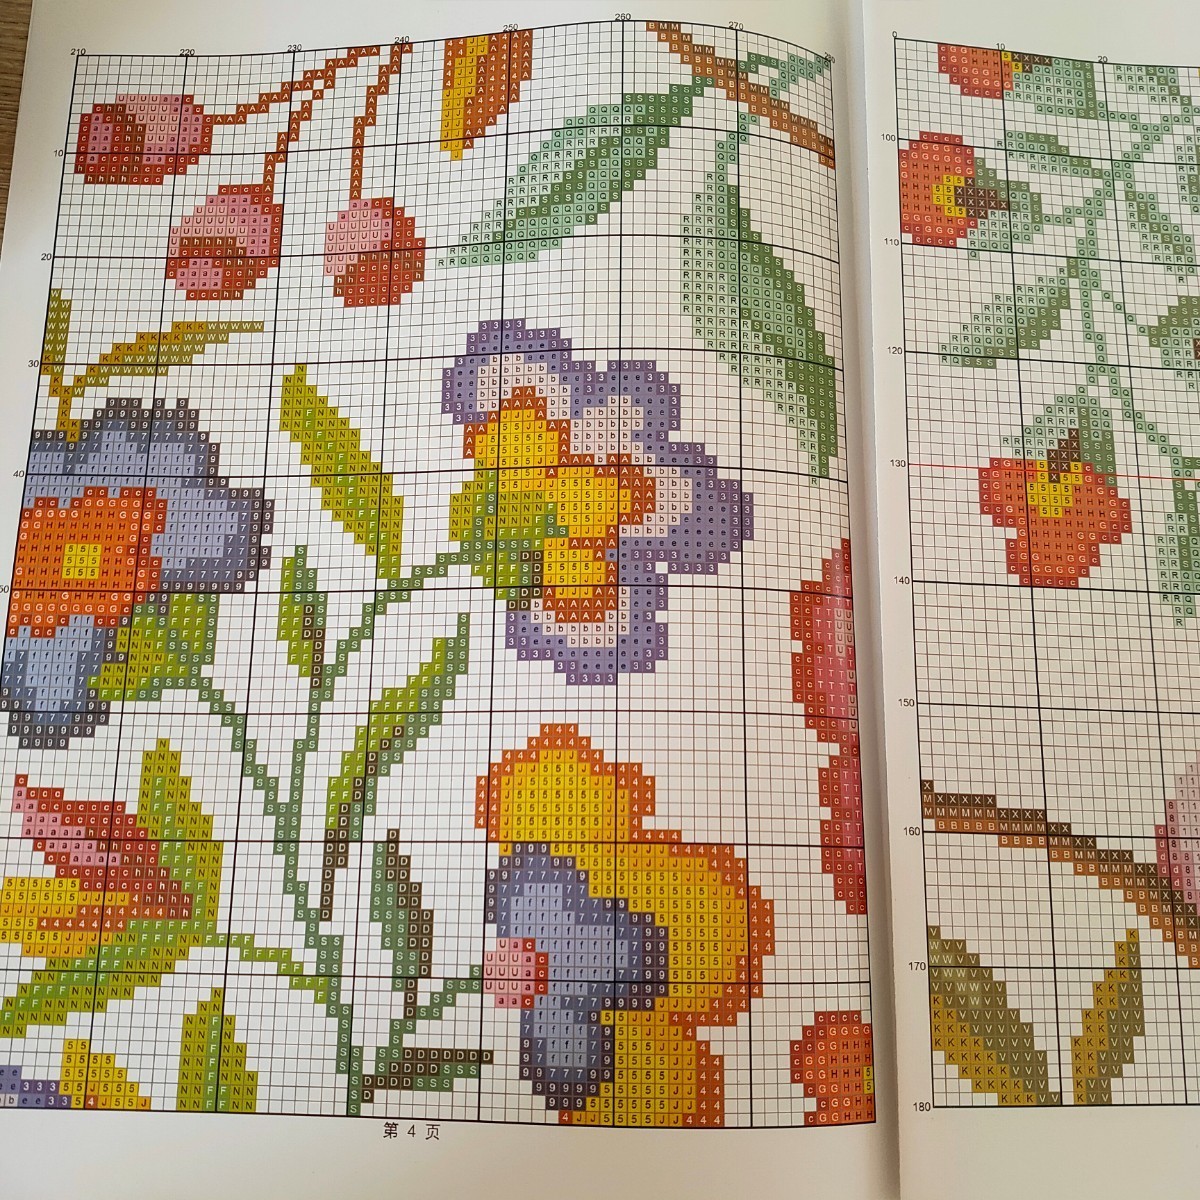 クロスステッチキット Bird and fragrance flower 鳥 花 モチーフ 14CT 59×55cm 布に図案印刷なし 刺繍 